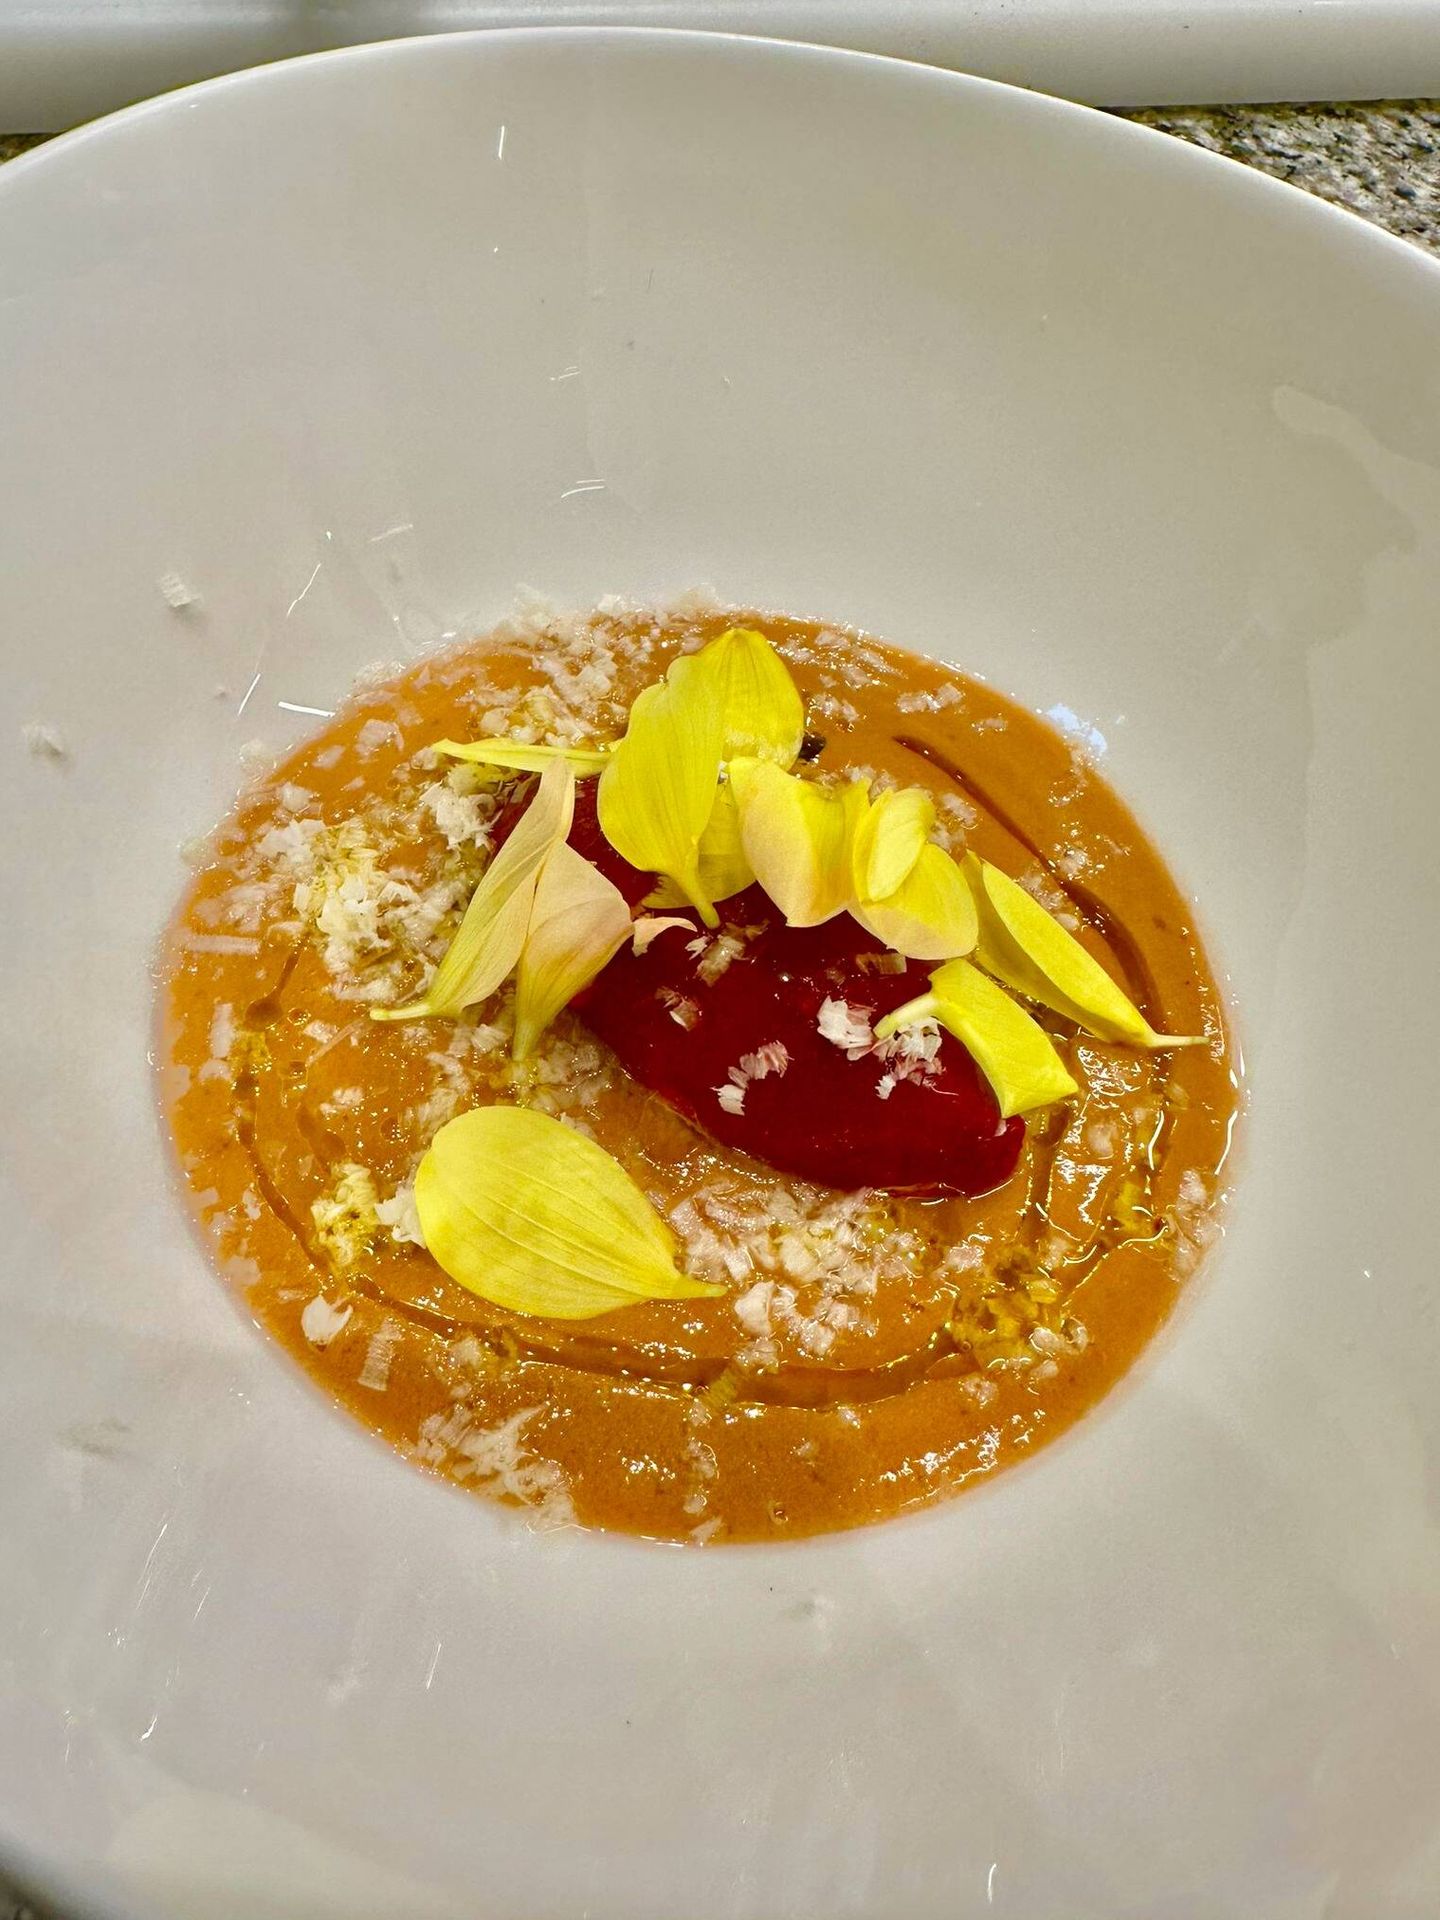 Sopa fría de tomate a la cereza del valle del Jerte, que elabora el chef Coco Montes en su restaurante Pabú. (Rafael Ansón)